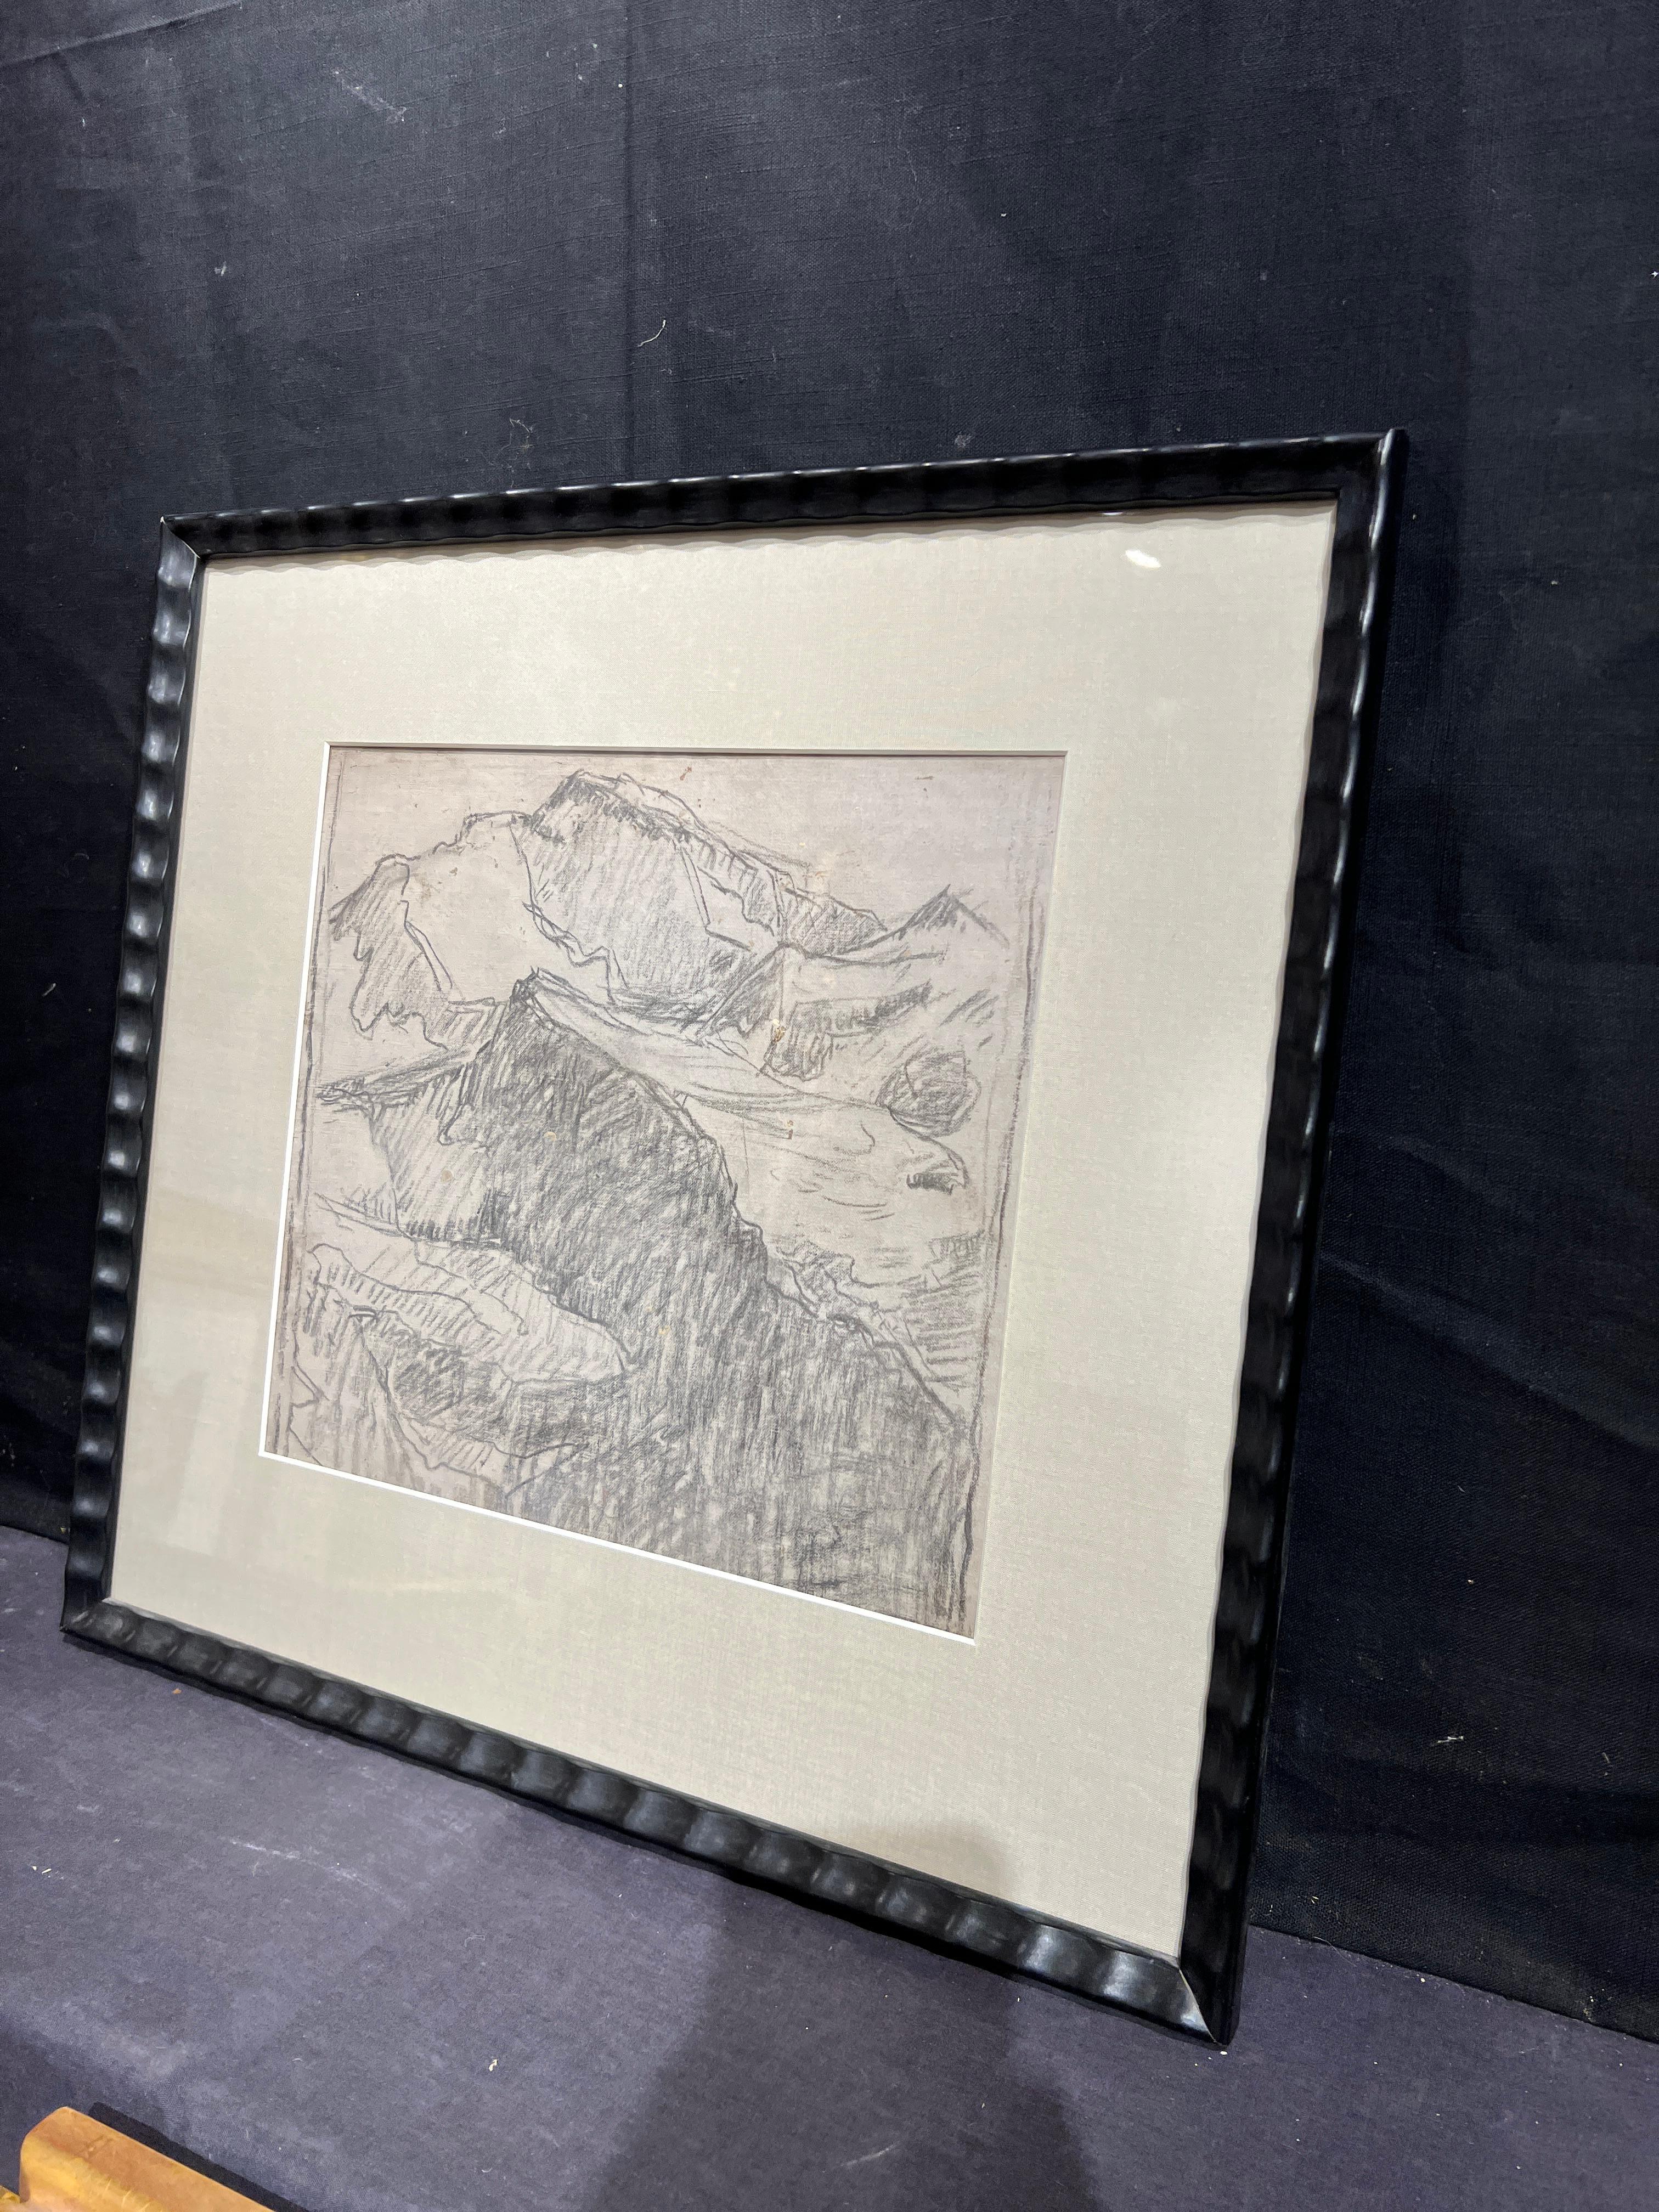 Alpine Mountain
By. Edgar Alwyn Payne (American, 1882-1947)
Unframed: 13 x 13 inches
Framed: 20.5 x 21.5